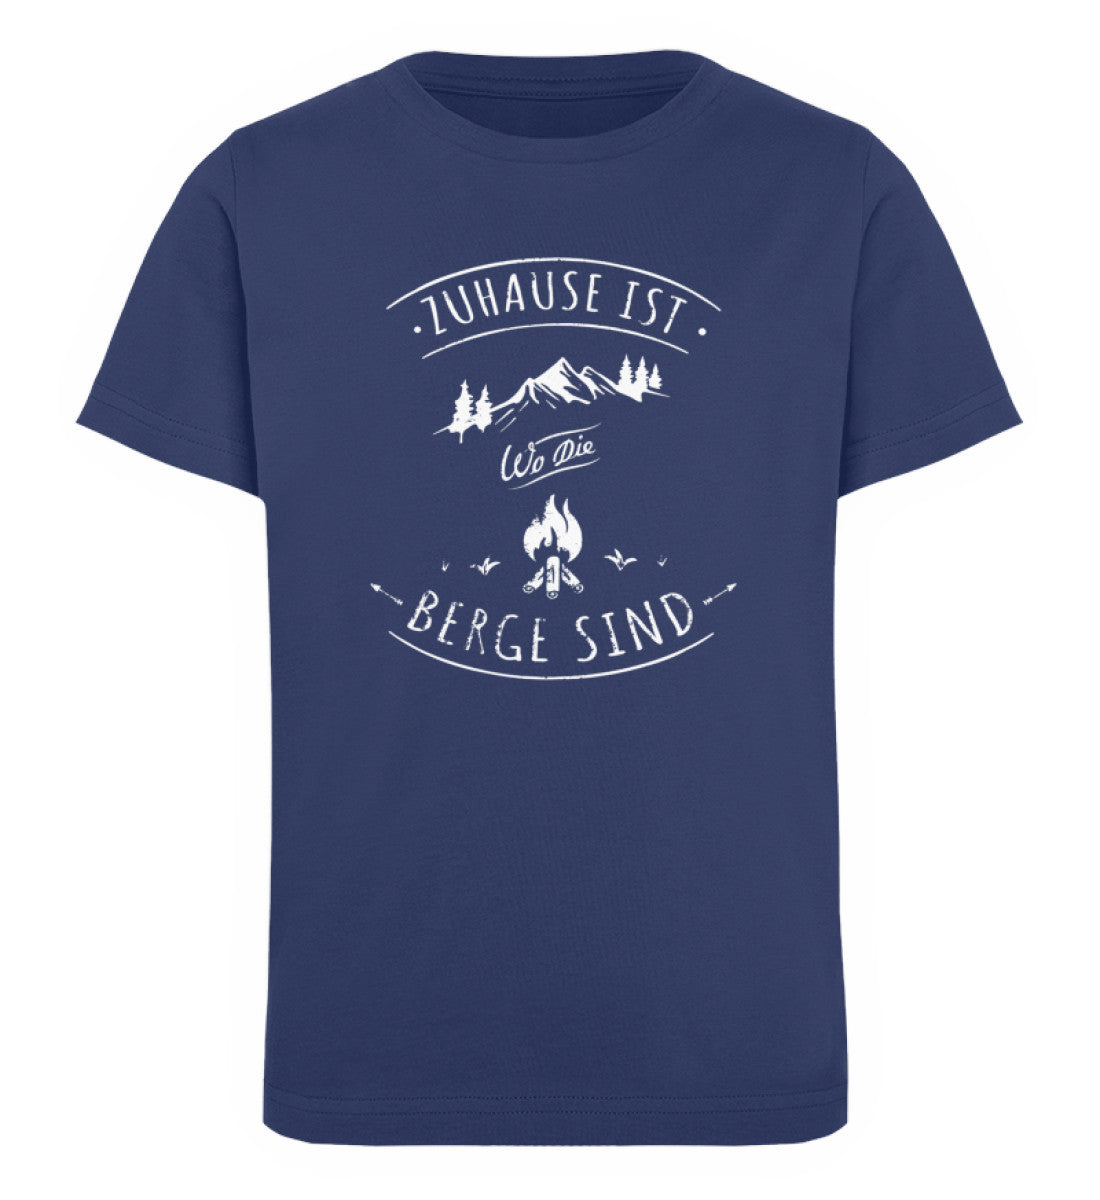 Zuhause ist da wo die Berge sind - Kinder Premium Organic T-Shirt Navyblau